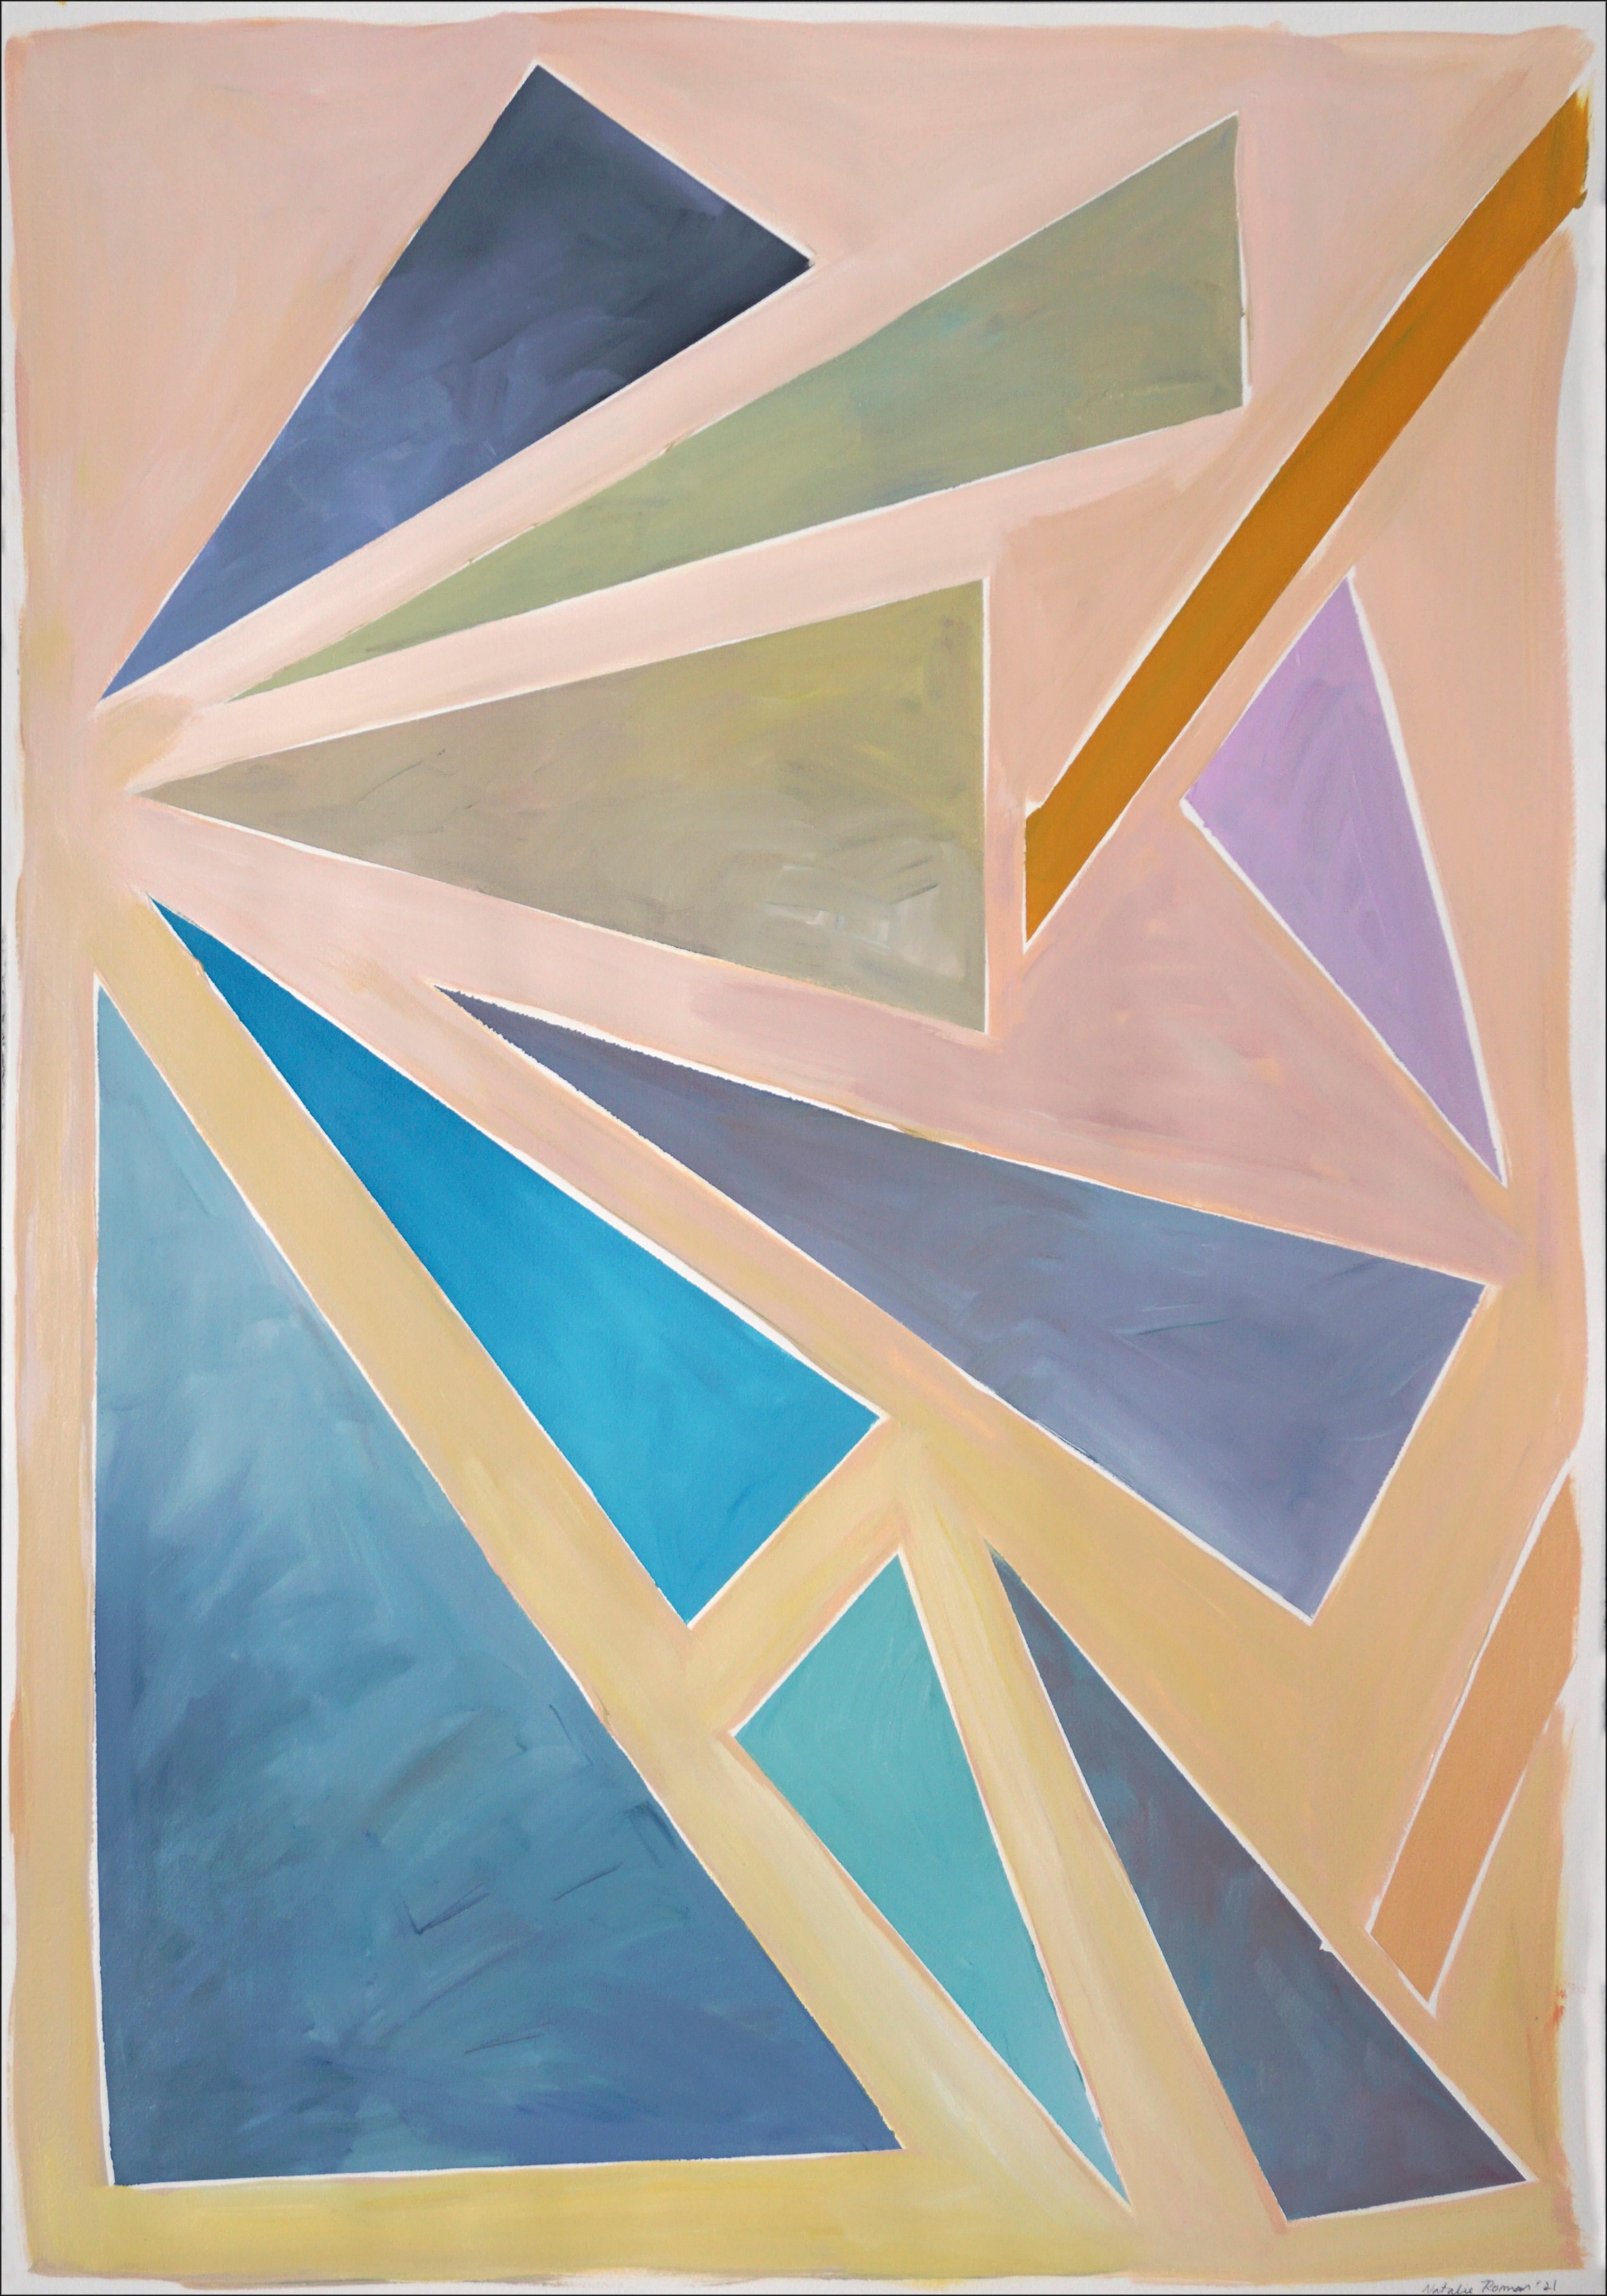 Triangles de coucher de soleil constructivistes, fond aux tons pastel, géométrie flottante